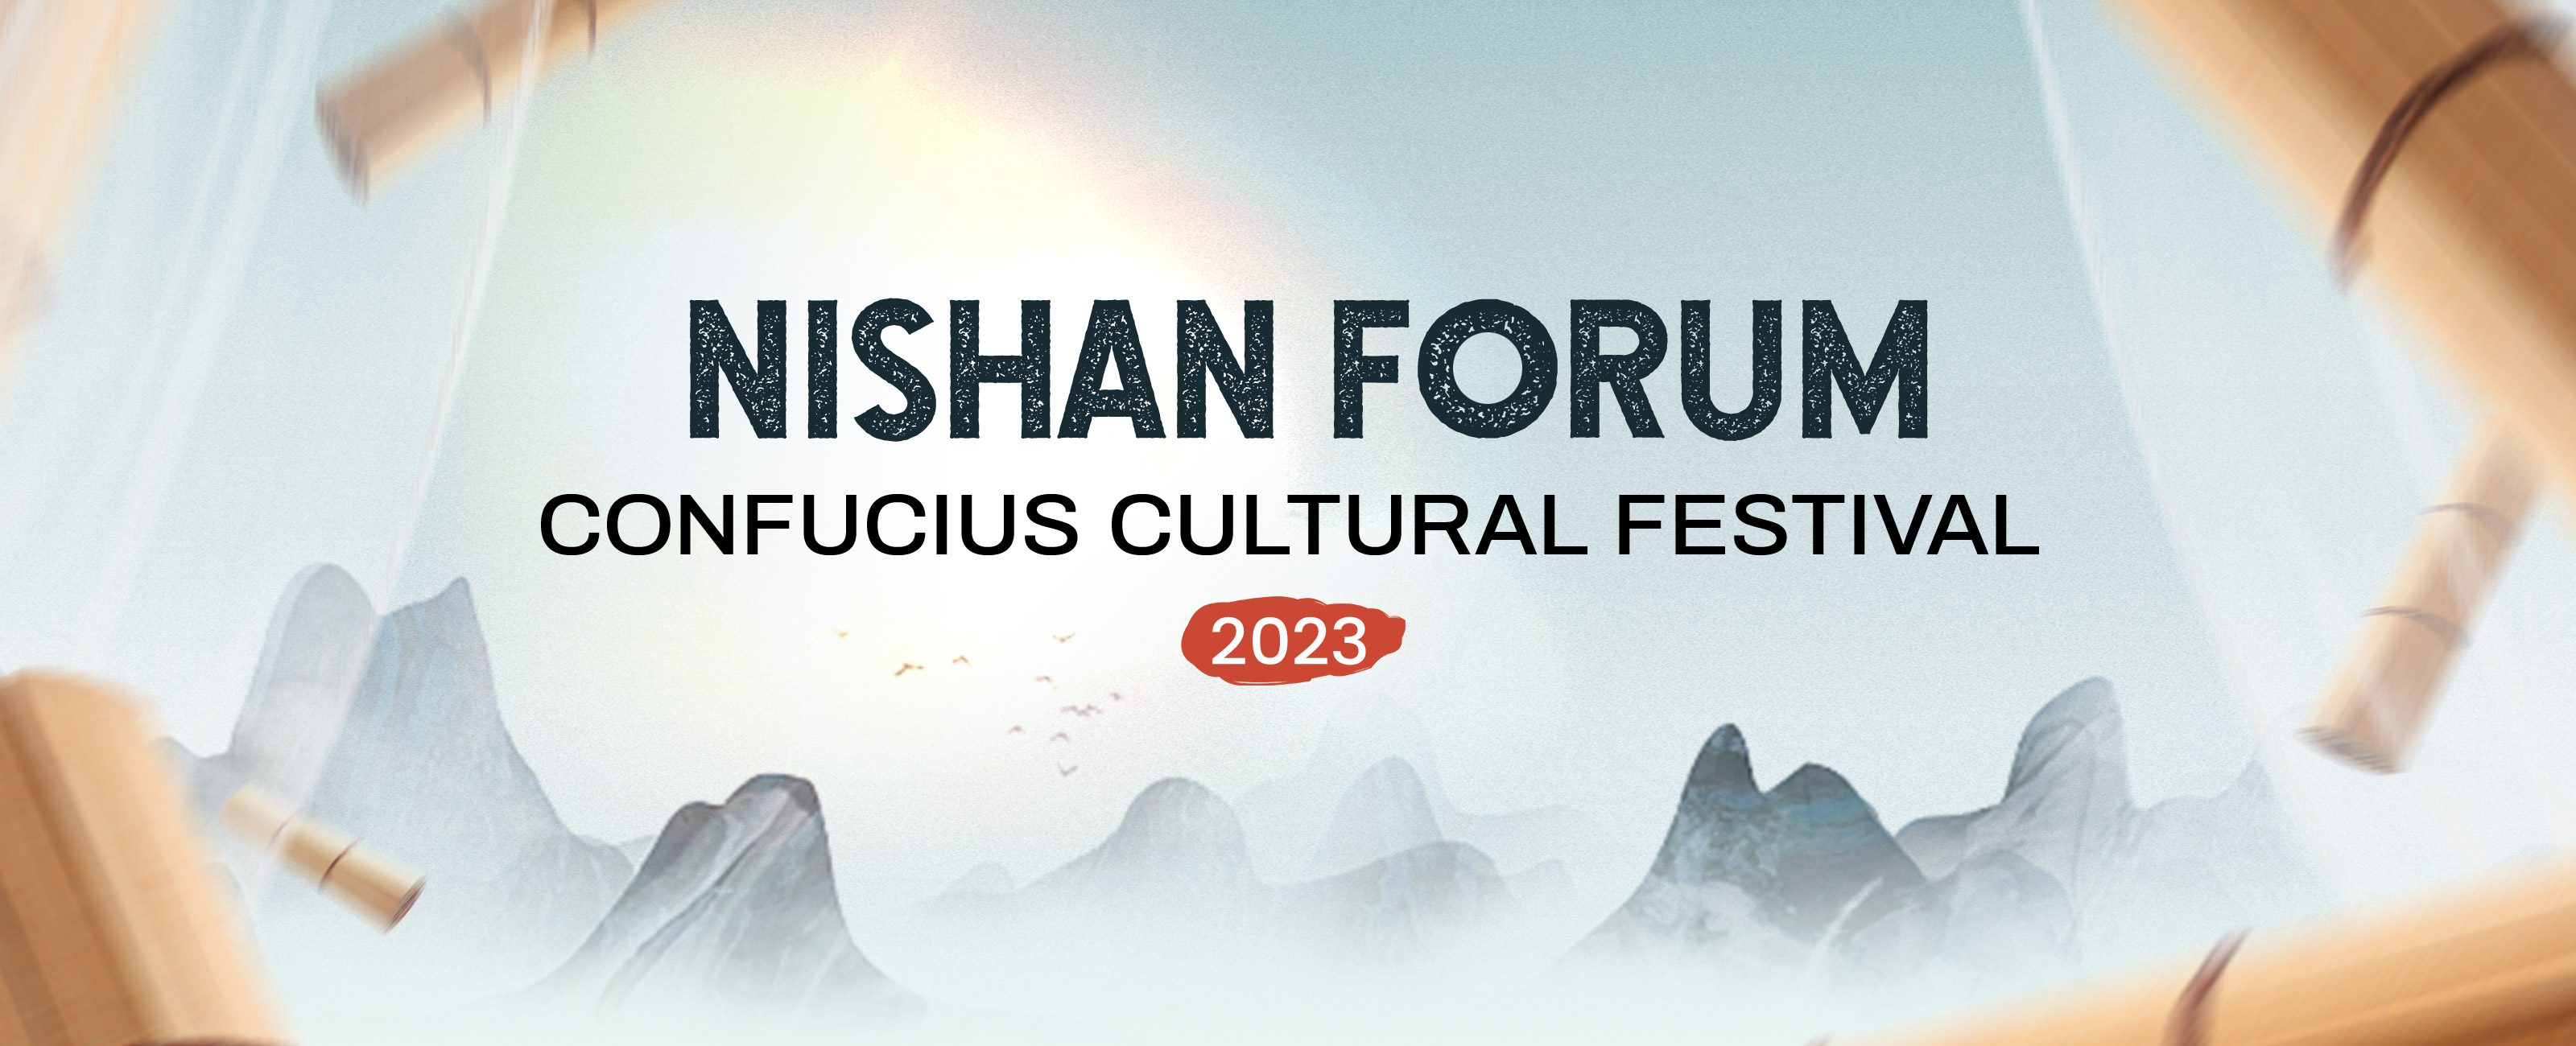 NishanForum2023